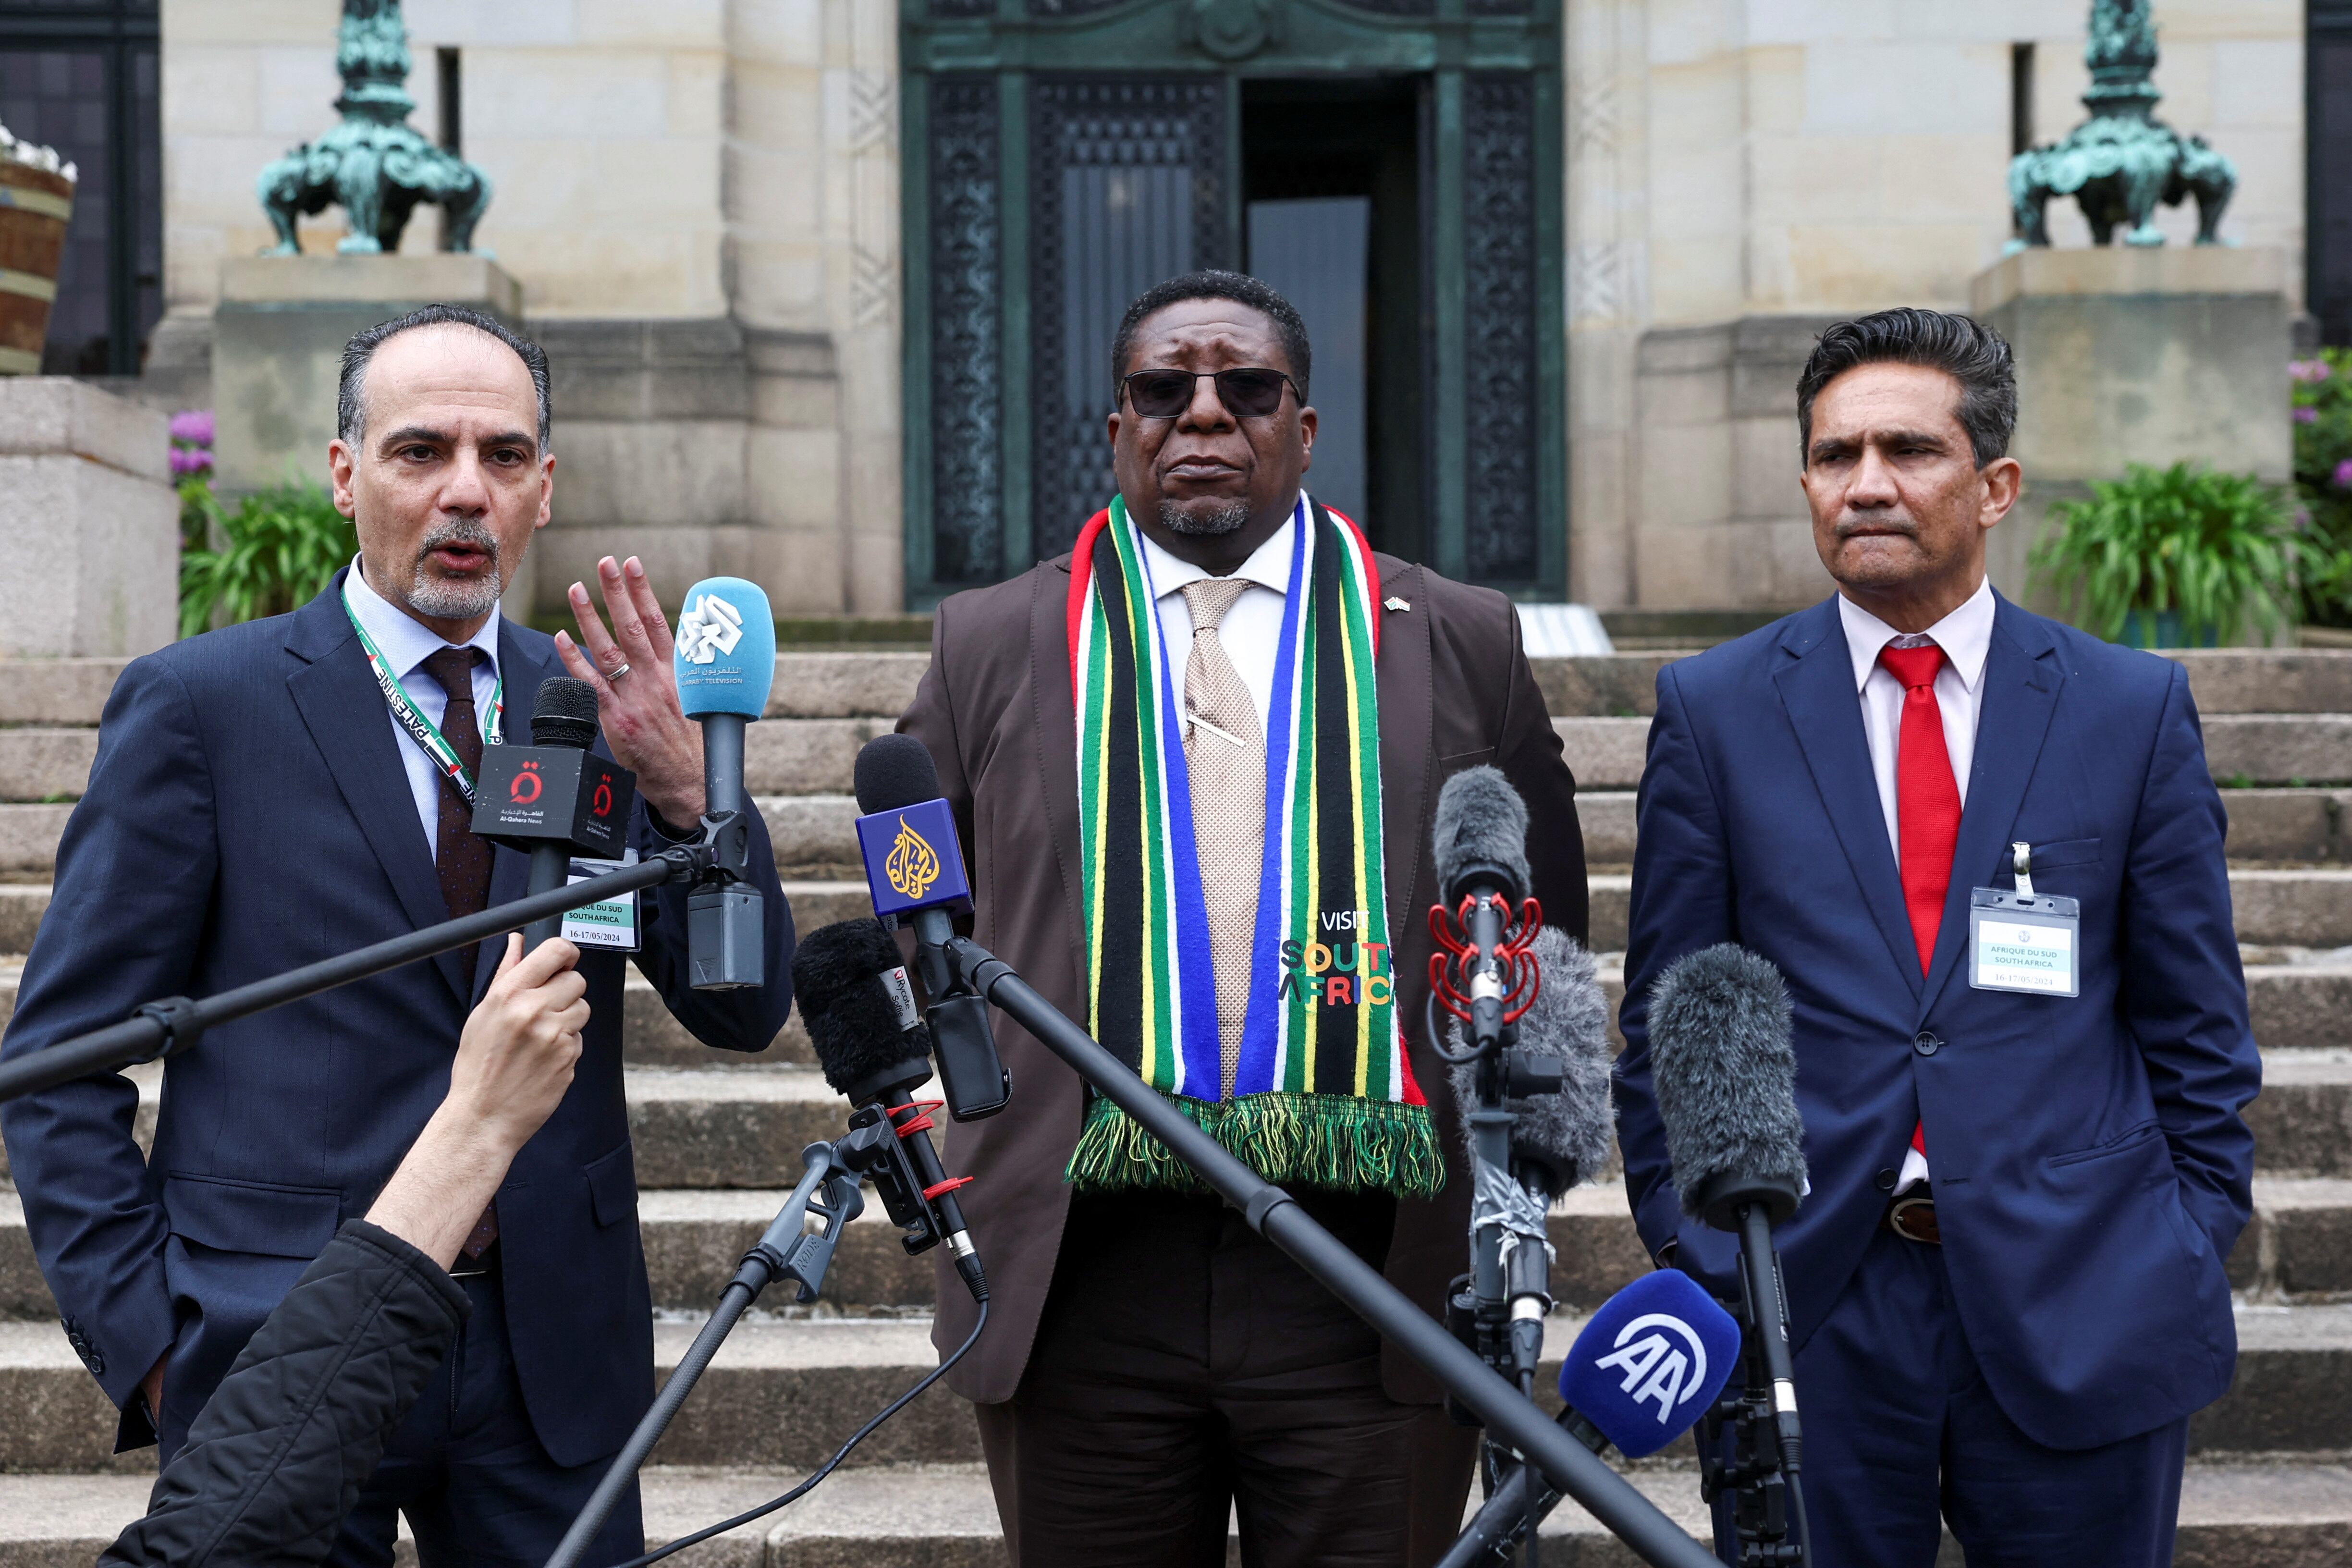 De izquierda a derecha: el ministro adjunto de Asuntos Multilaterales, de la Autoridad Nacional Palestina, Ammar Hijazi, el director de Relaciones Internacionales de Sudáfrica, Zane Dangor, y el embajador de Sudáfrica en los Países Bajos, Vusimuzi Madonsela, ante la sede del Tribunal Internacional de Justicia, este viernes 24 de mayo en La Haya.